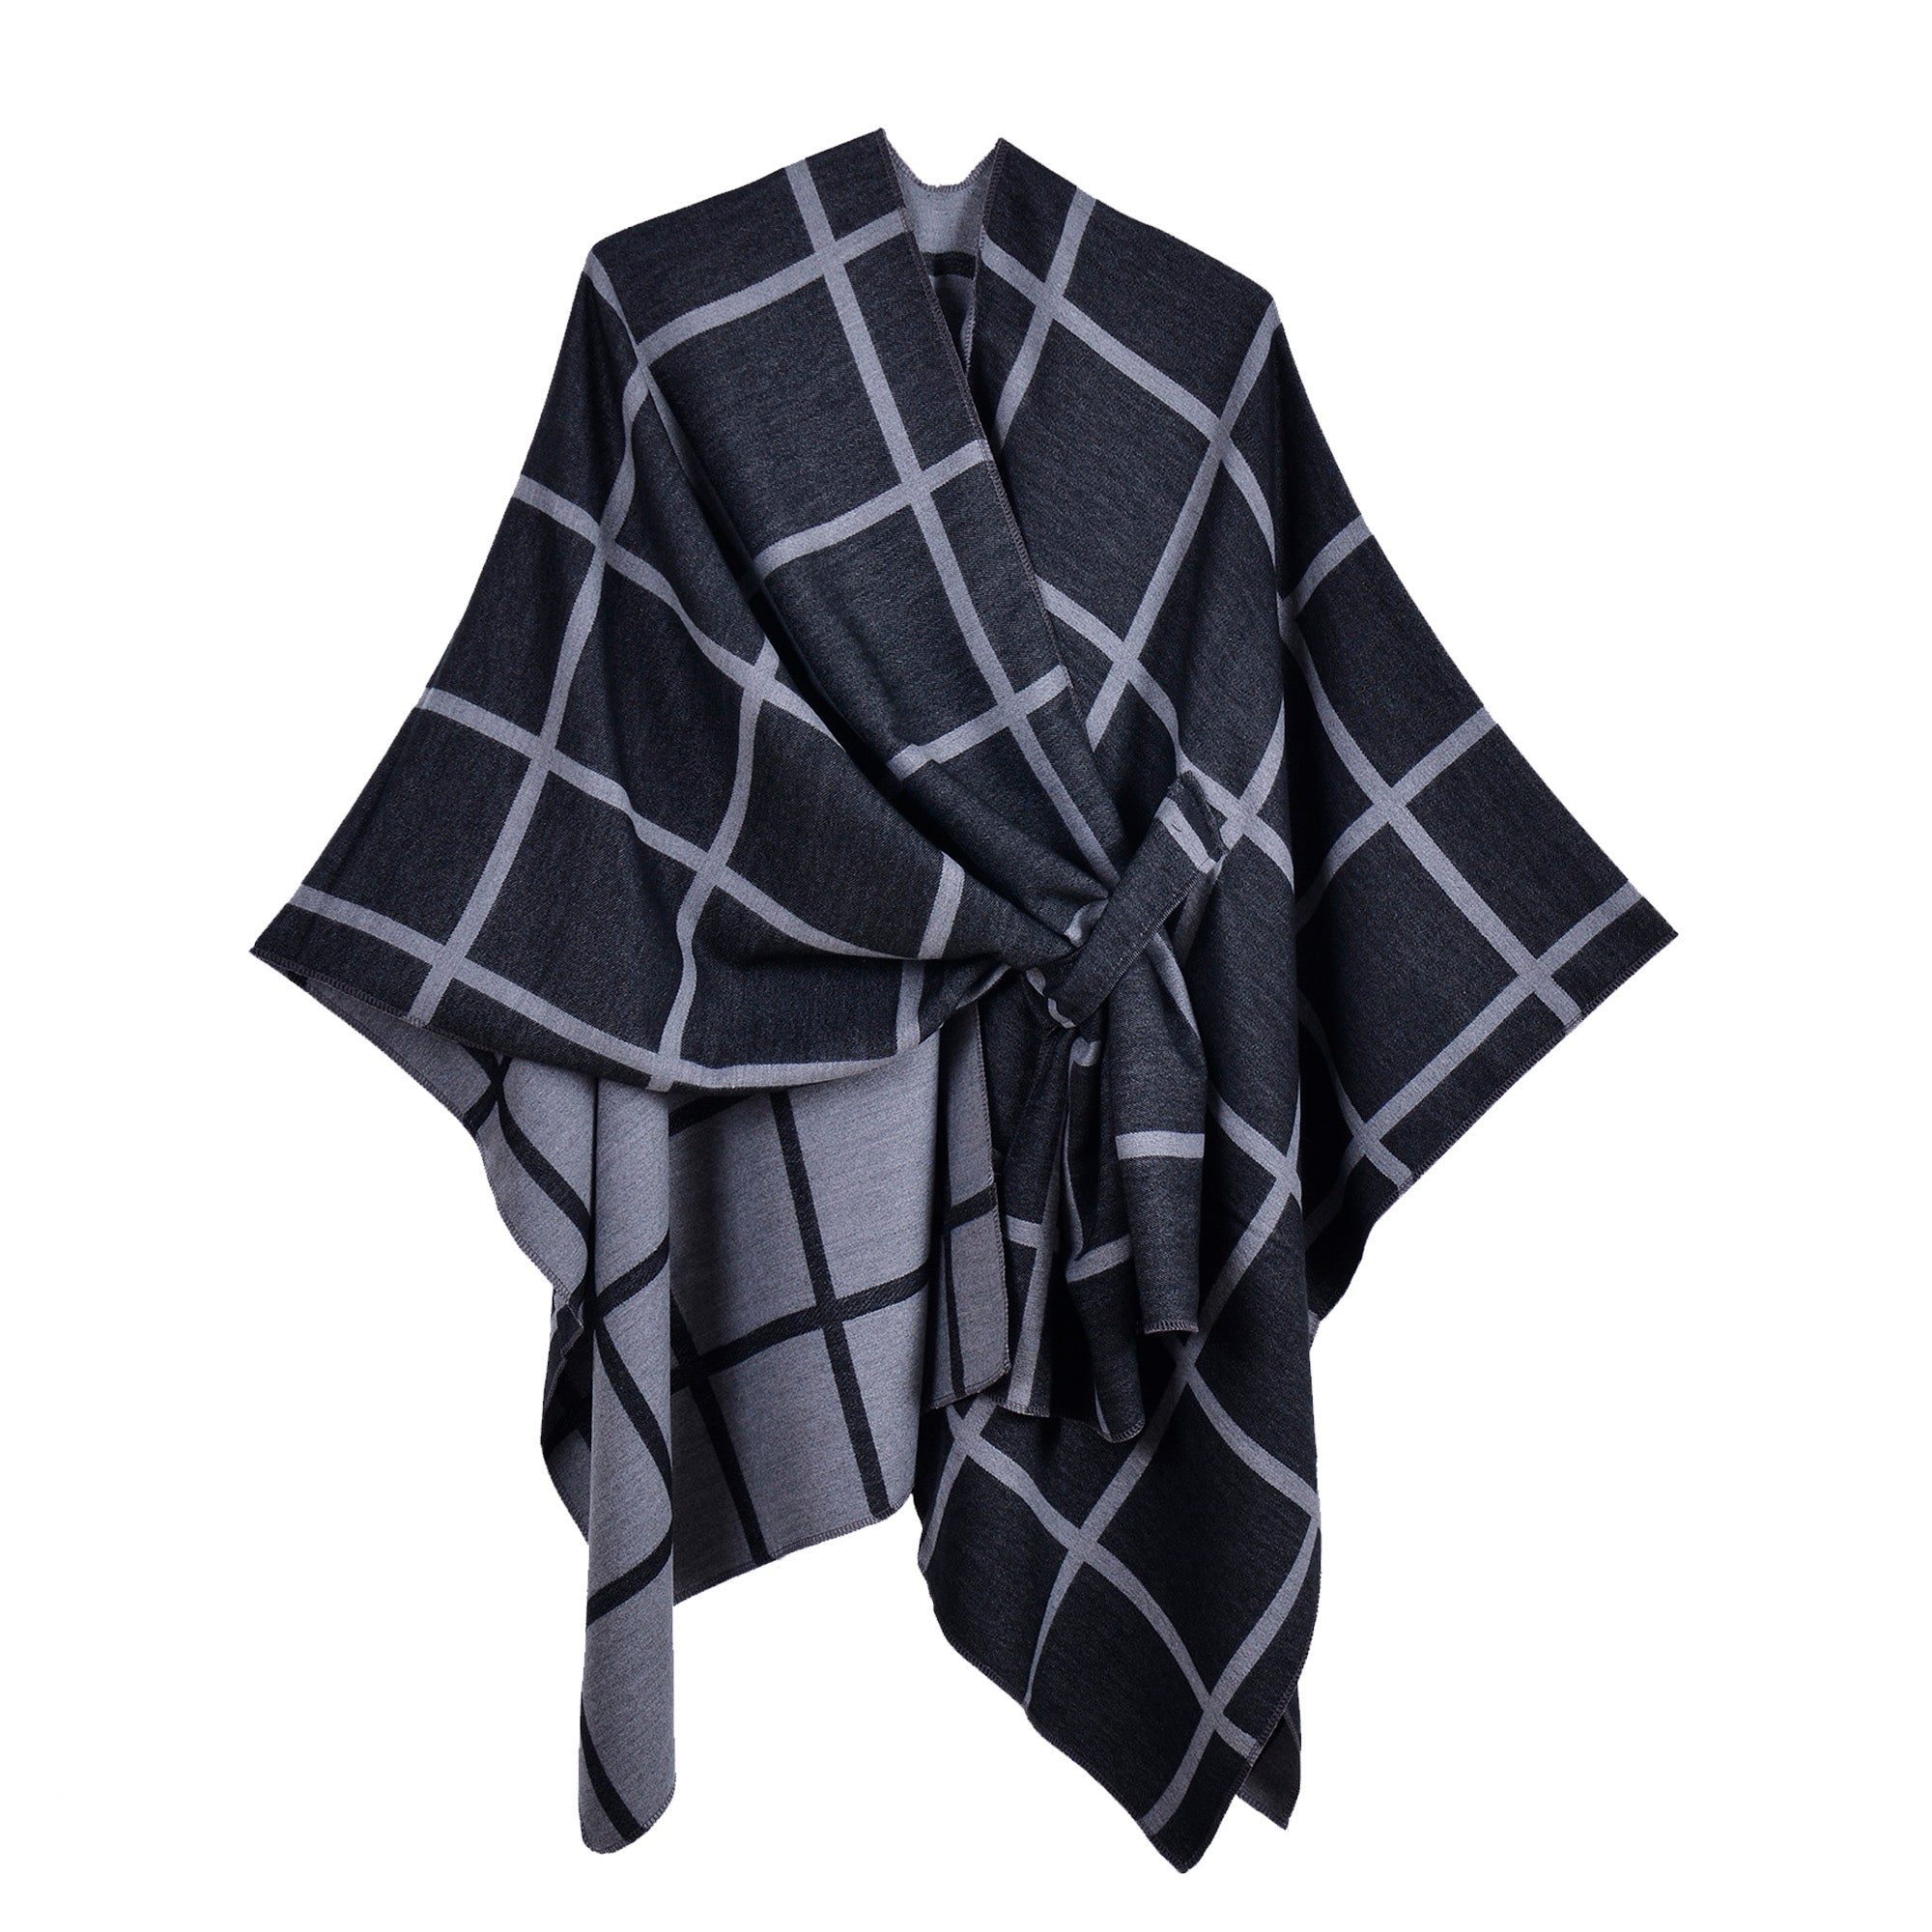 New plaid shawl black gray